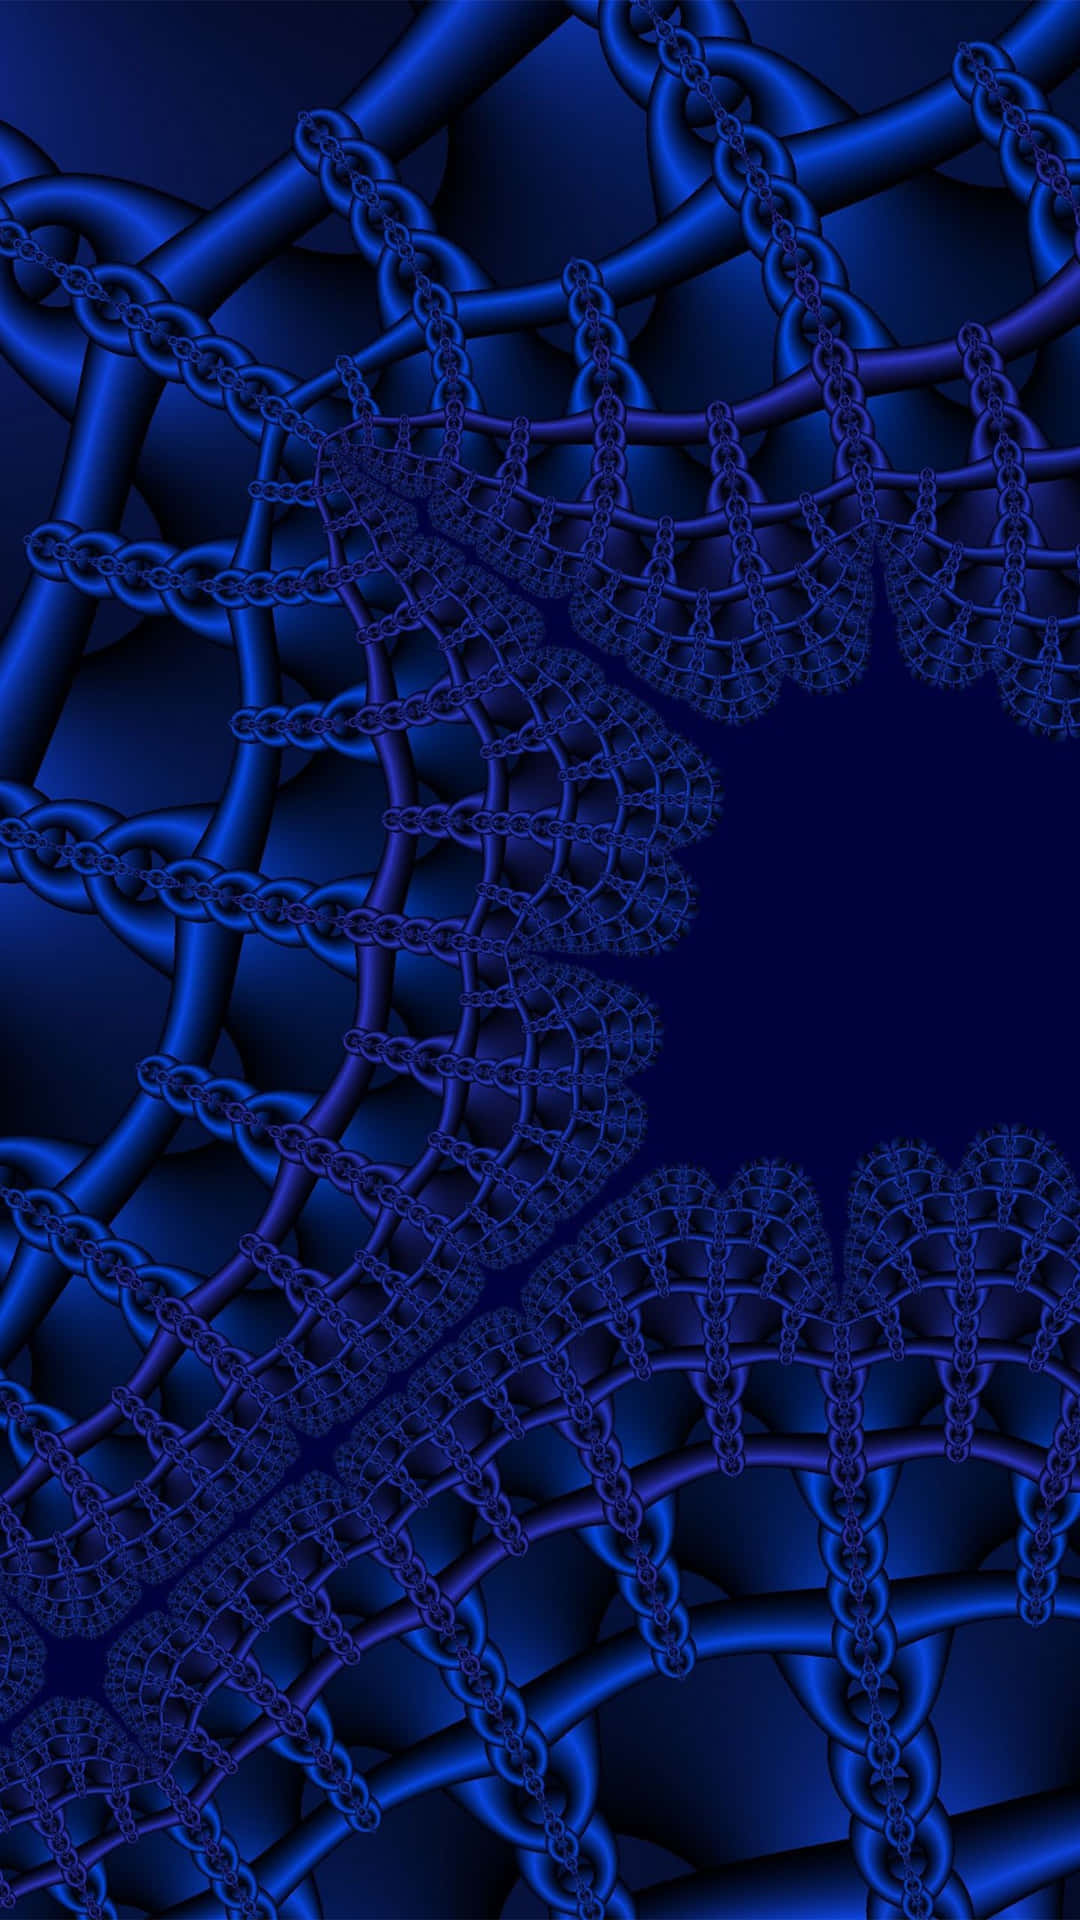 Dark Blue Chains Abstract_ Art.jpg Wallpaper